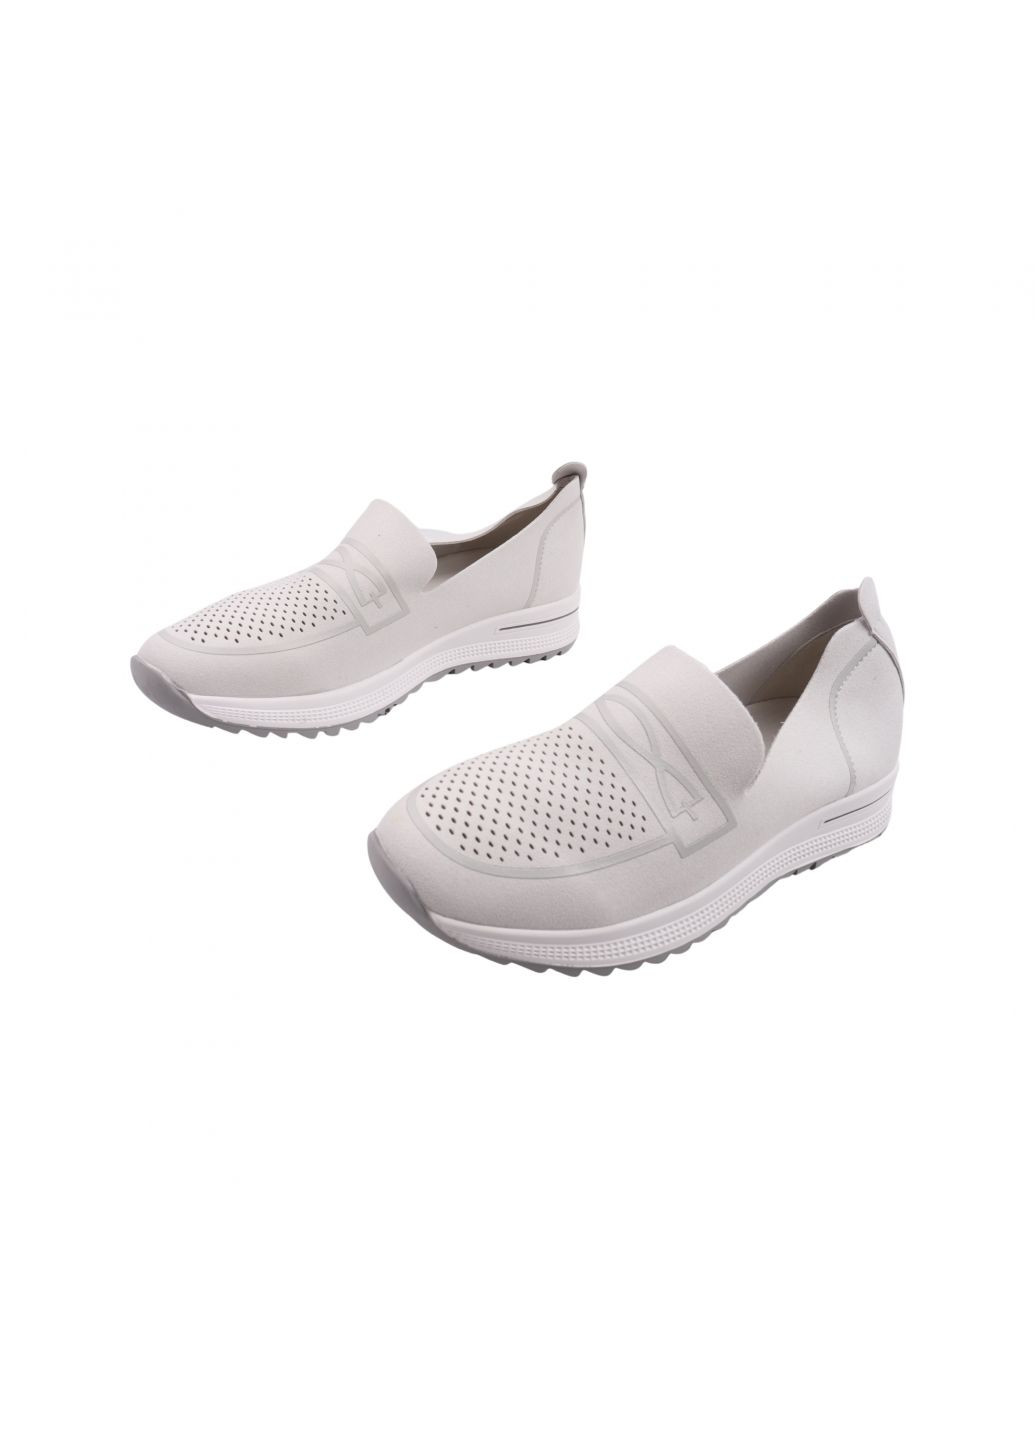 Туфлі жіночі сірі Meglias 5-23ltcp (257763318)